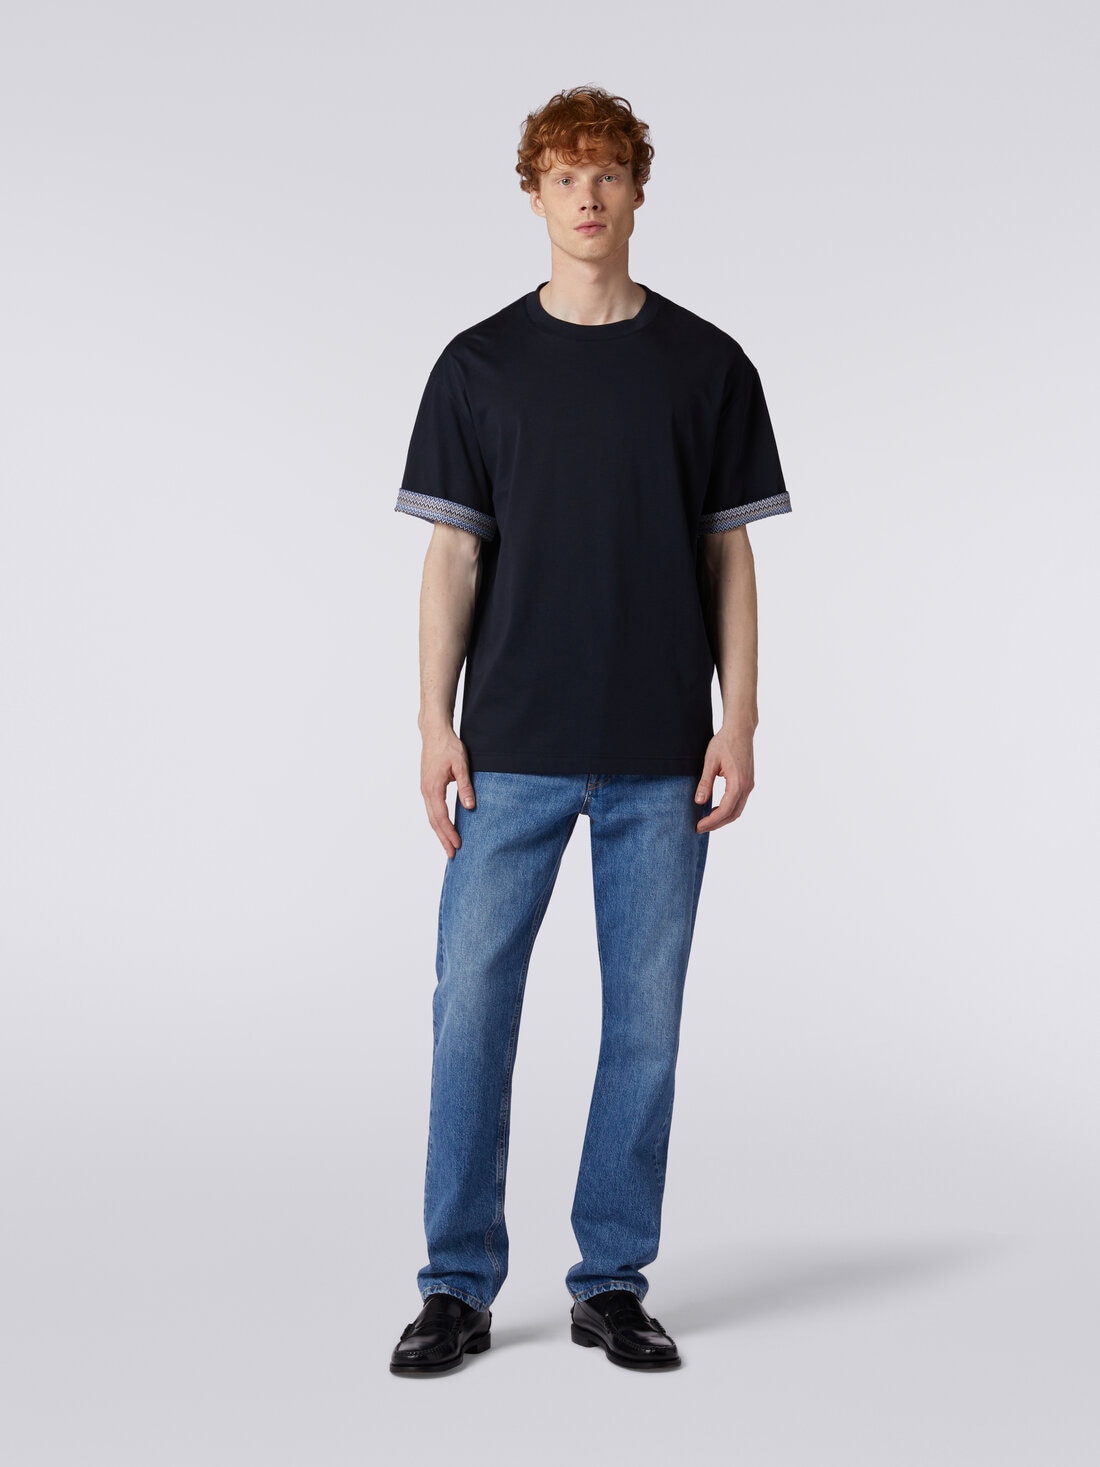 Camiseta de cuello redondo de algodón con vuelta a espigas, Azul Oscuro - US24SL06BJ00JQS72DV - 1